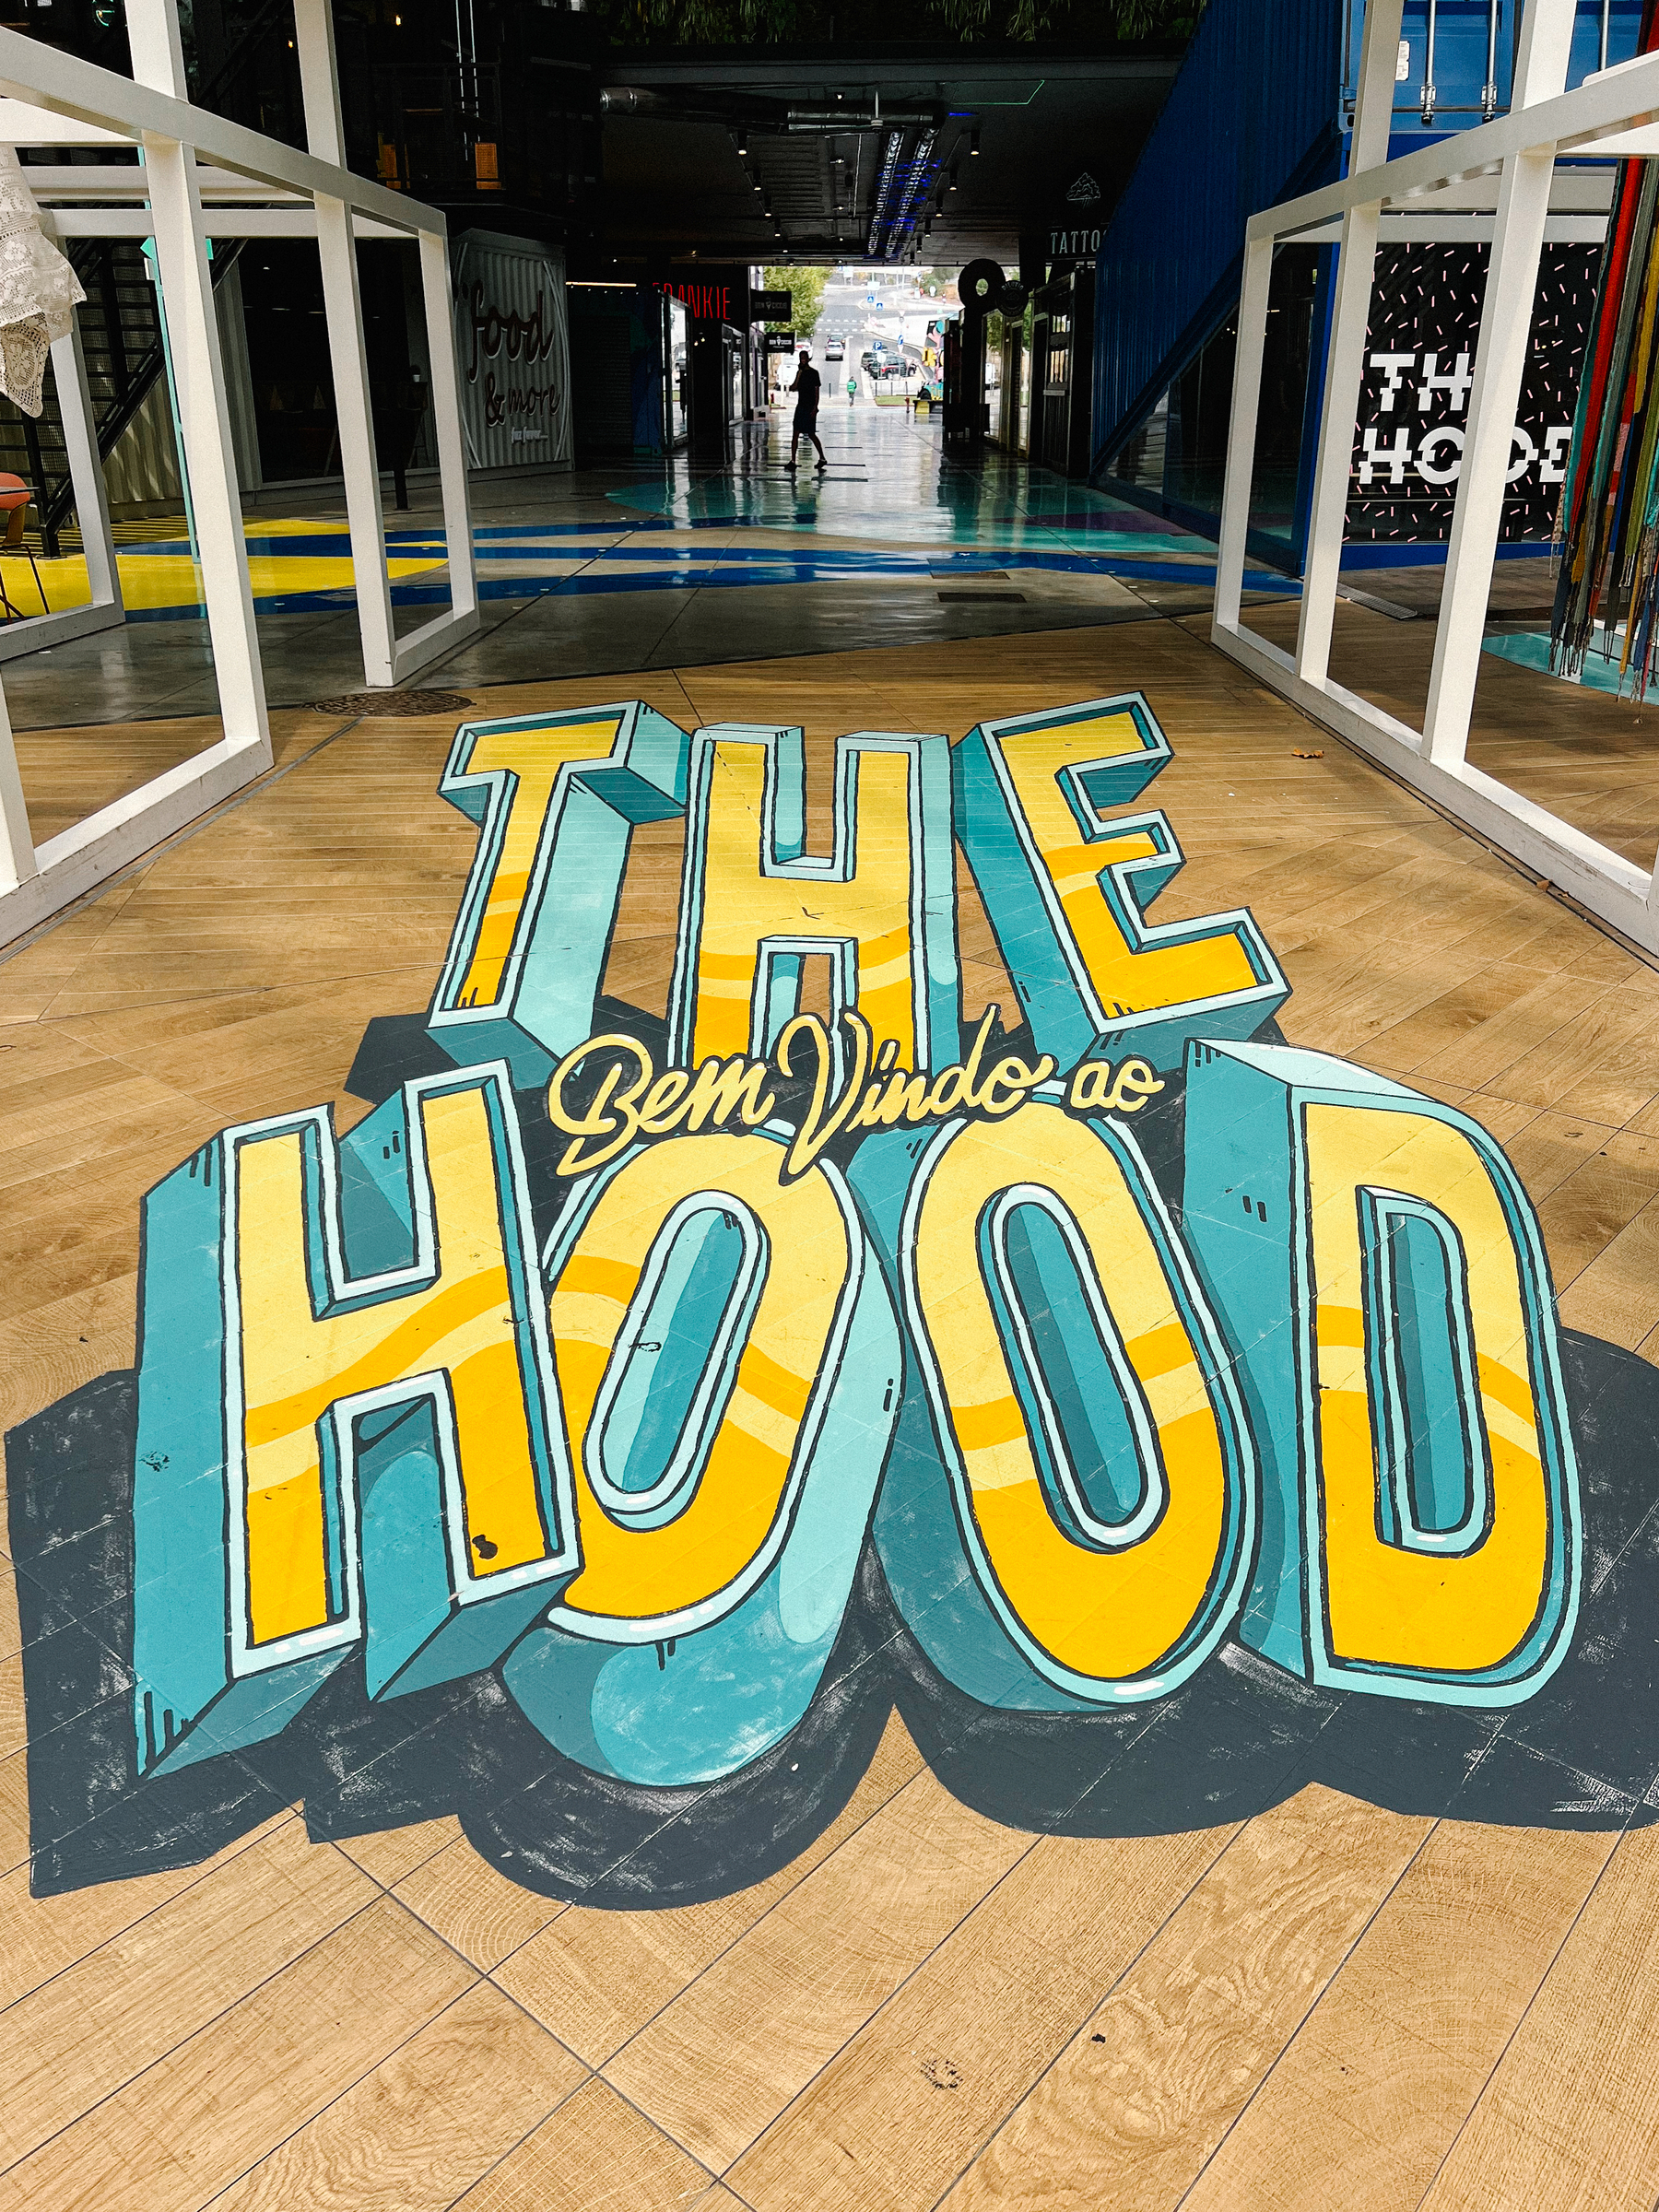 “The hood”, written on the floor. 